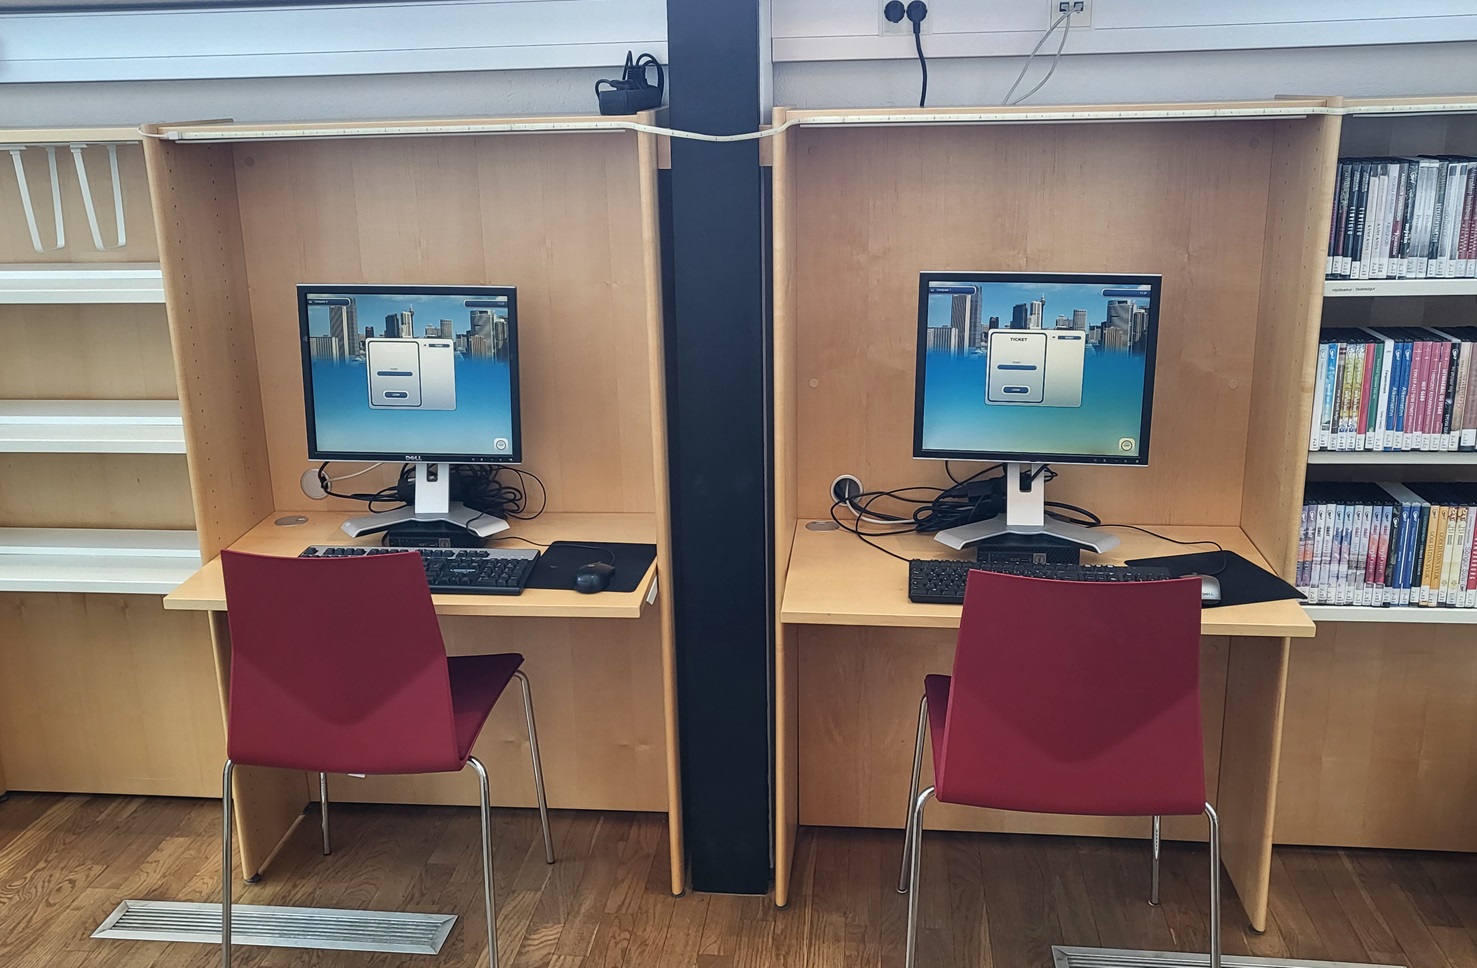 Two computers on desks in between bookshelves